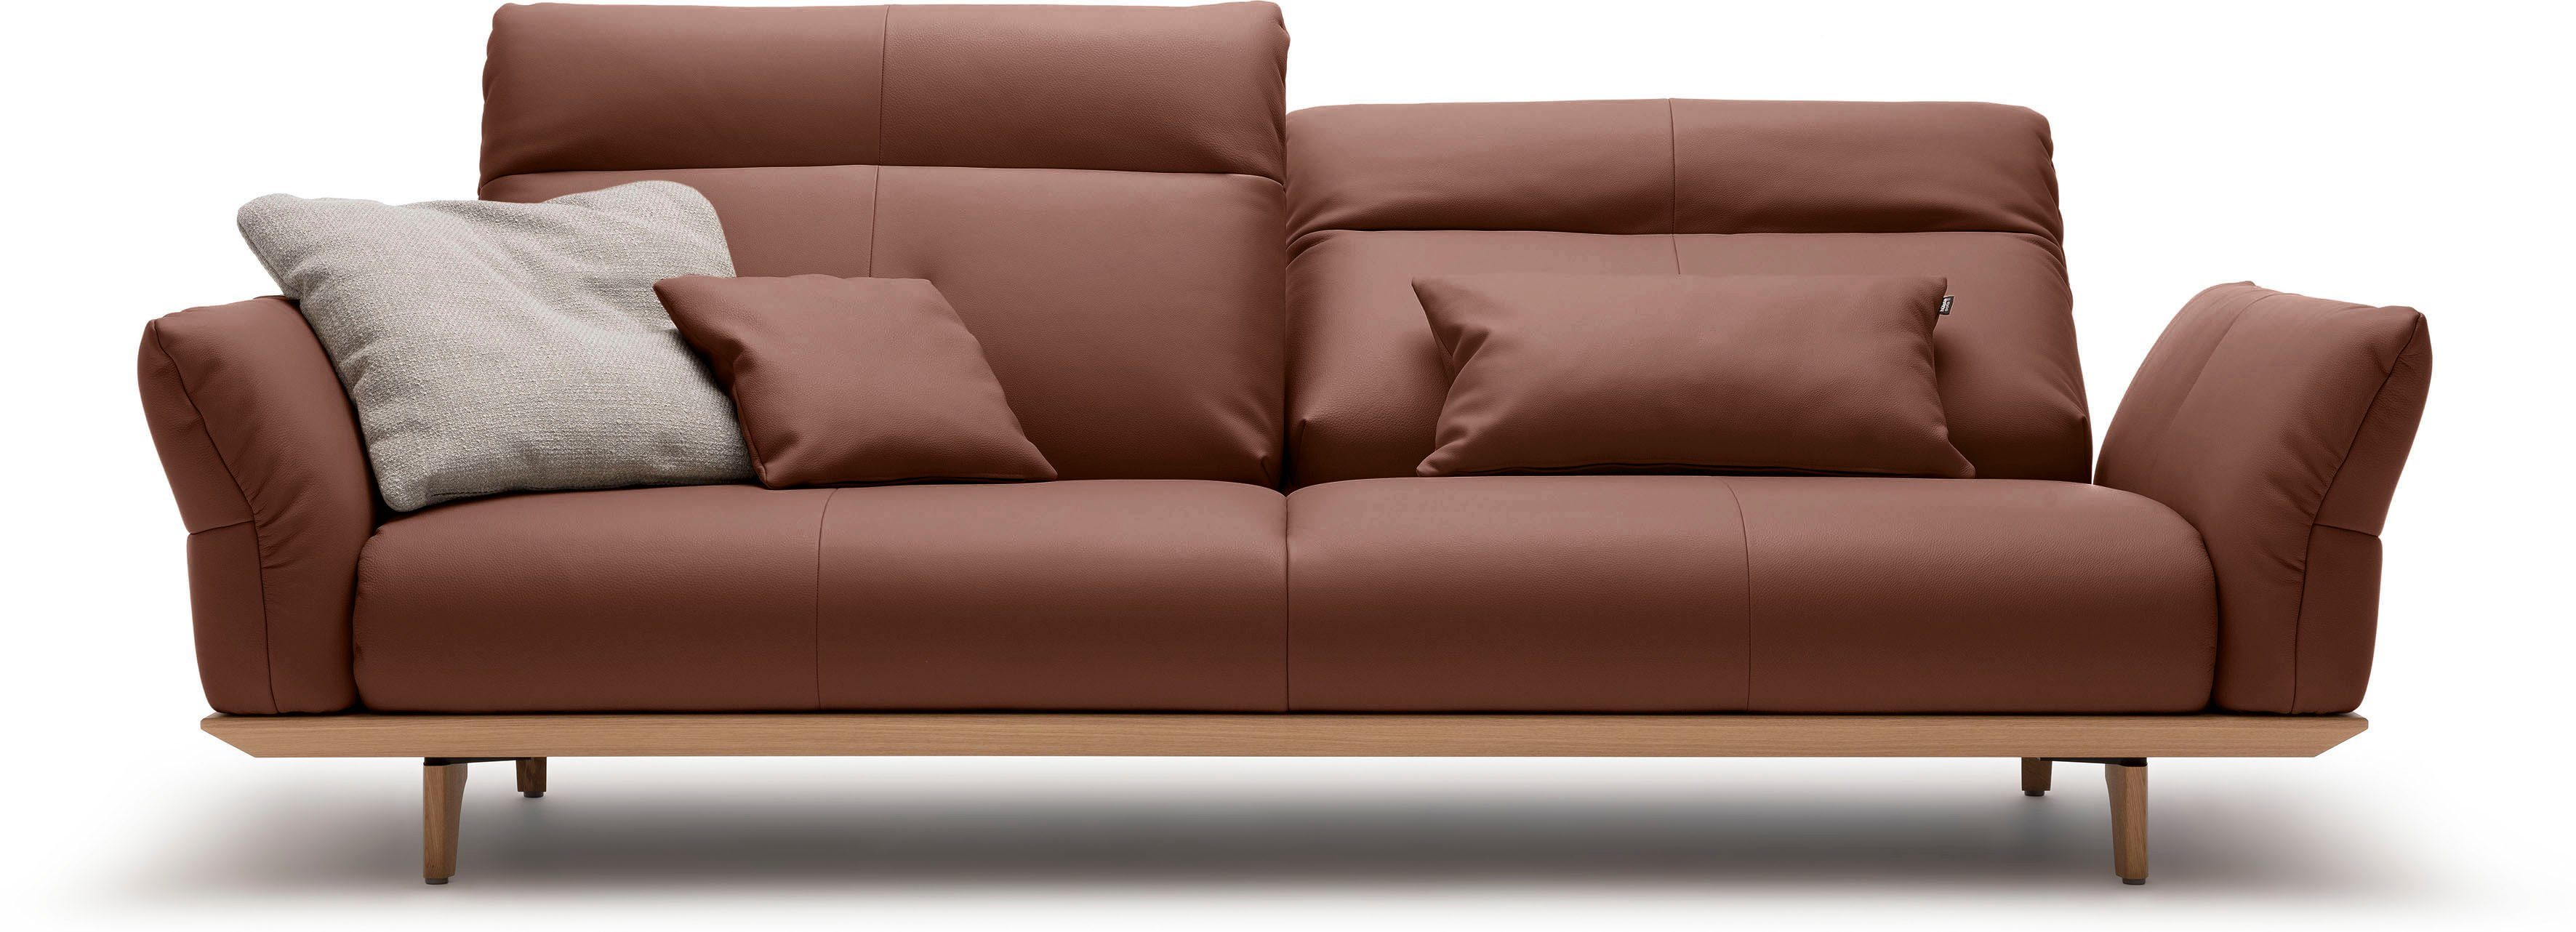 hülsta sofa 3,5-Sitzer hs.460, Eiche, cm Sockel in Füße 228 Eiche natur, Breite